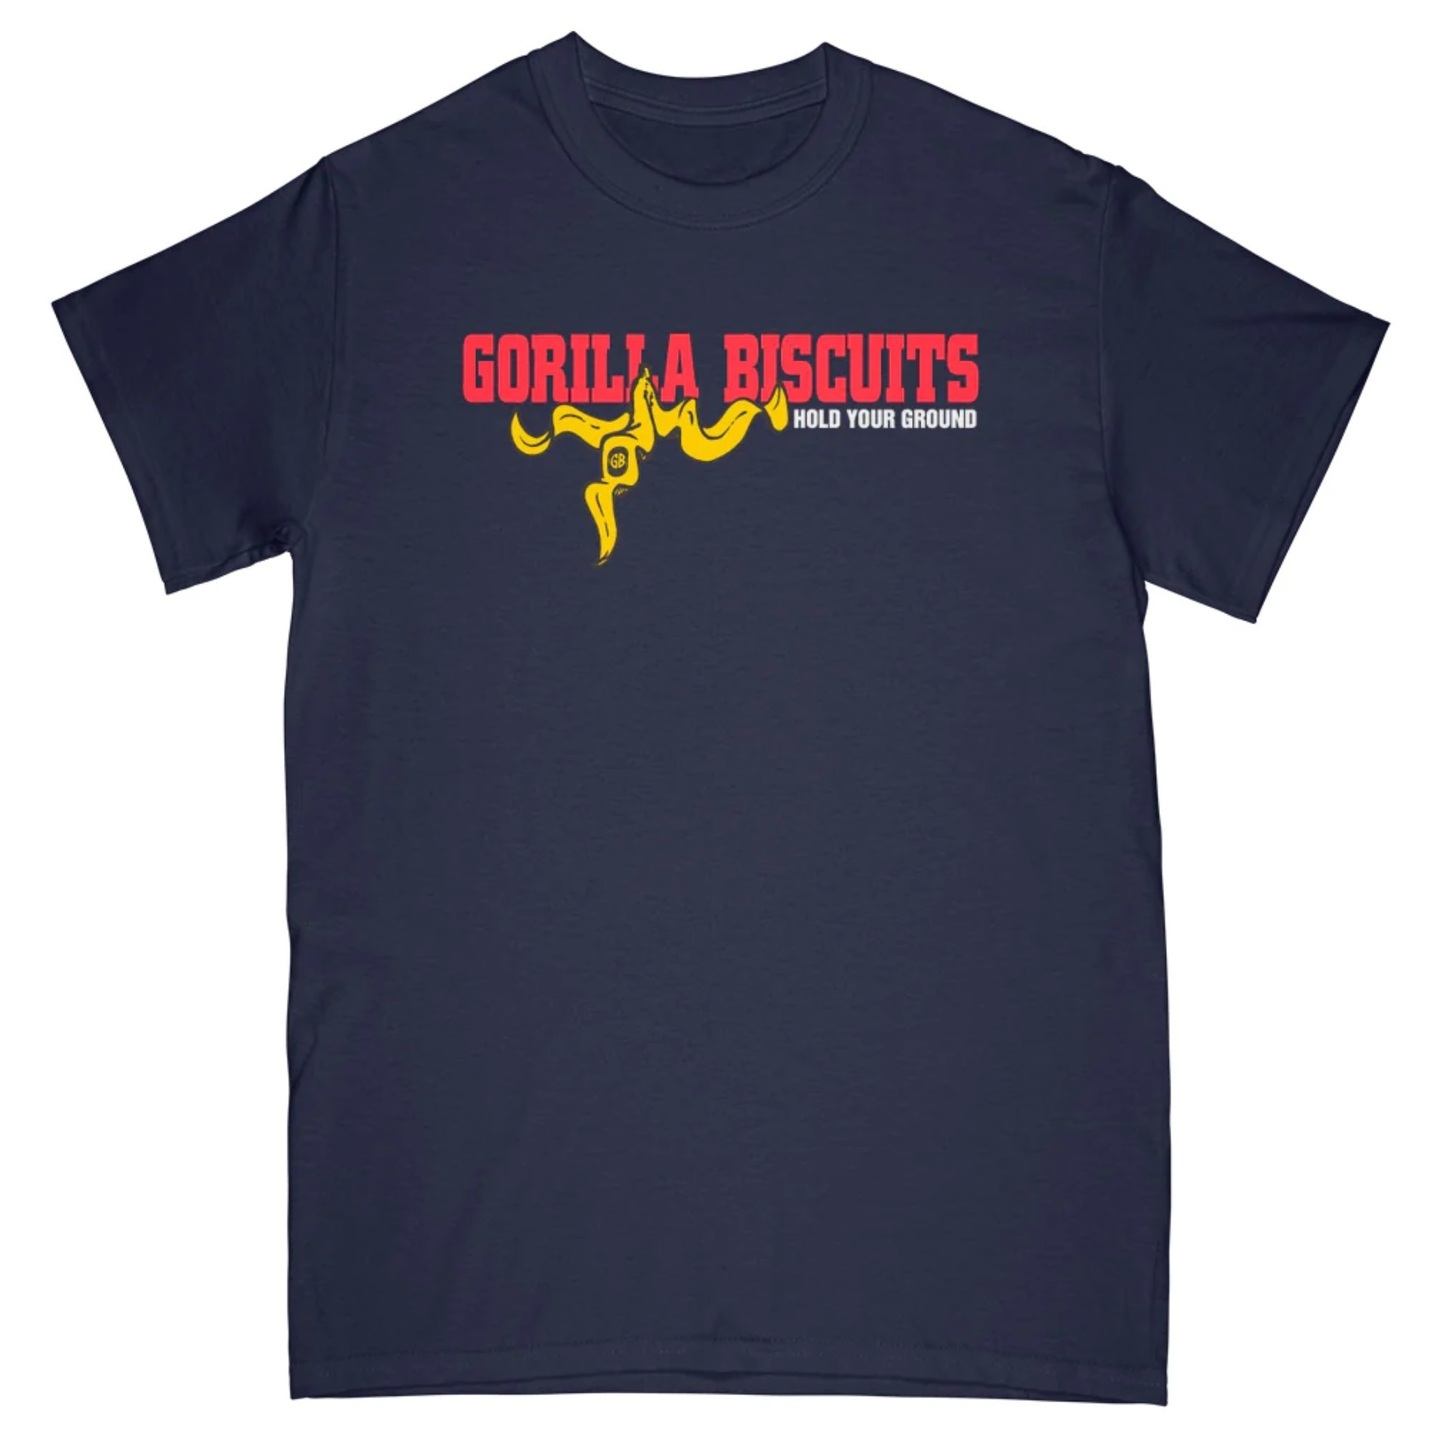 GORILLA BISCUITS - Hold Your Ground Navy